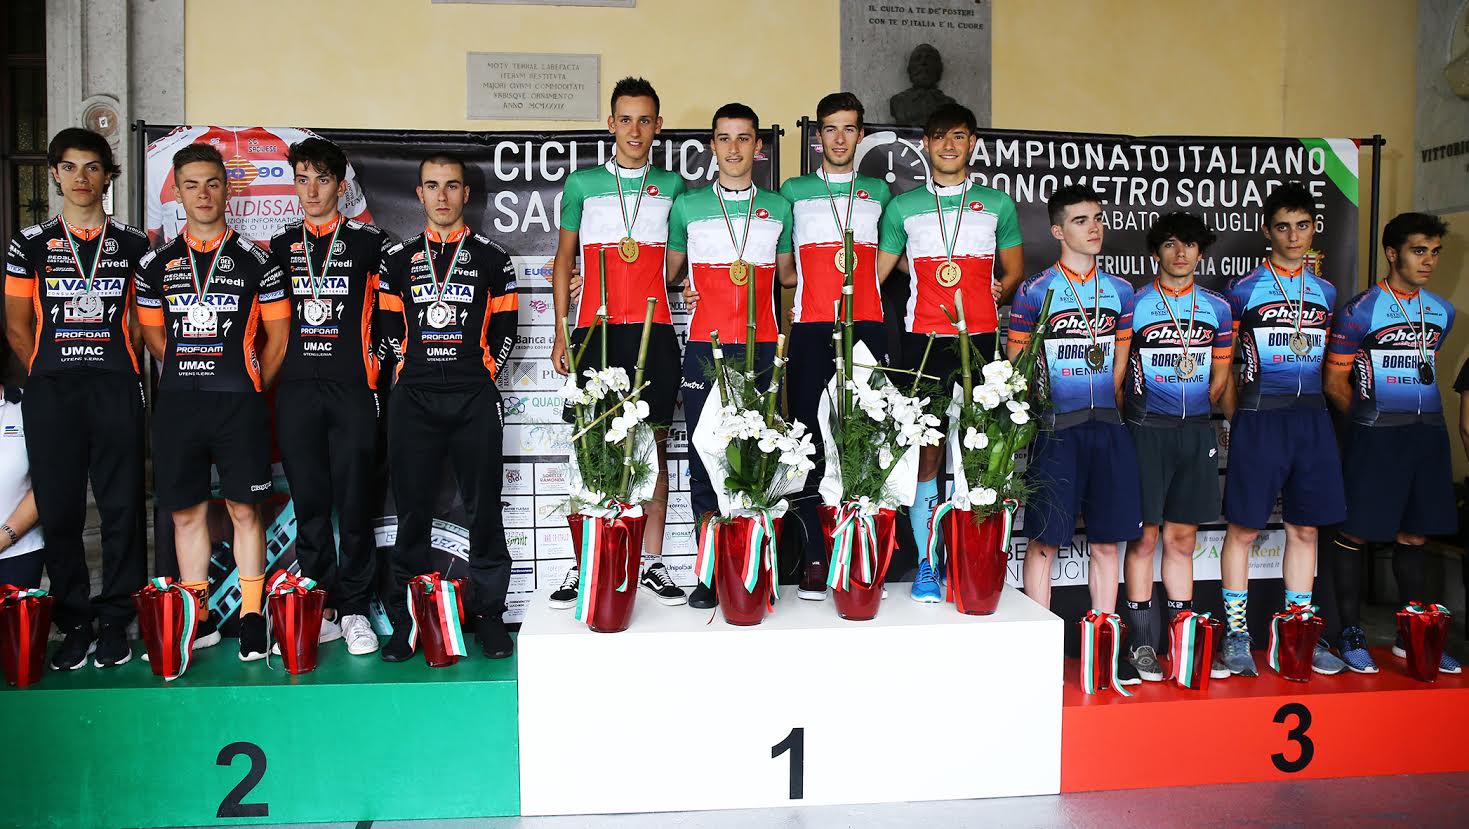 podio campionato italiano a cronosquadre juniores 2016